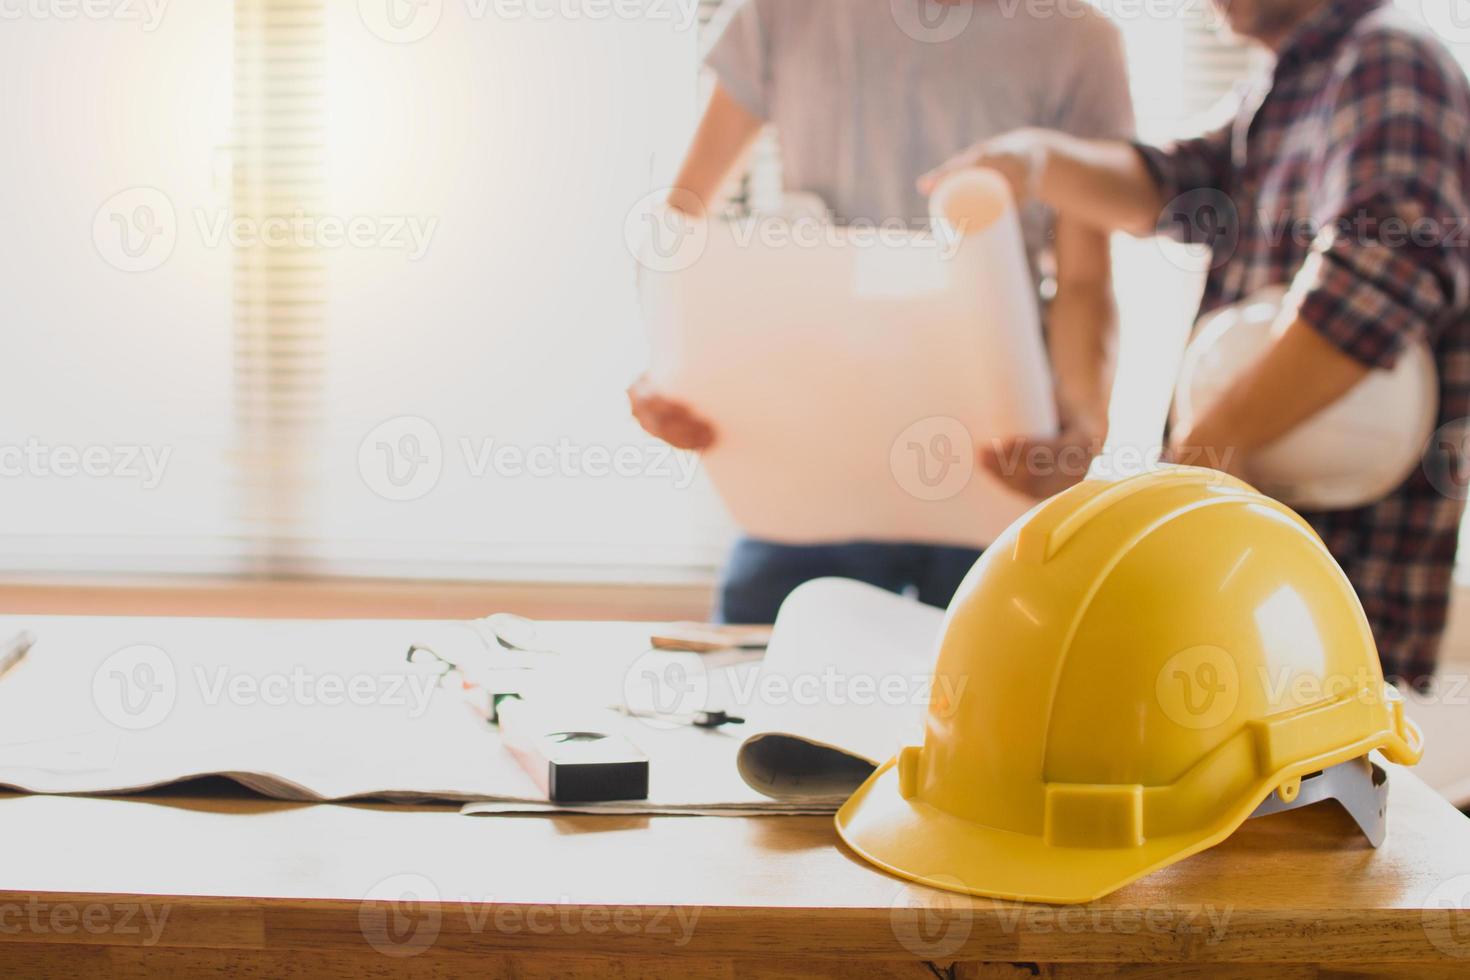 konstruktionsskyddshjälmar på bordet med ingenjör som håller ritningsbakgrund foto